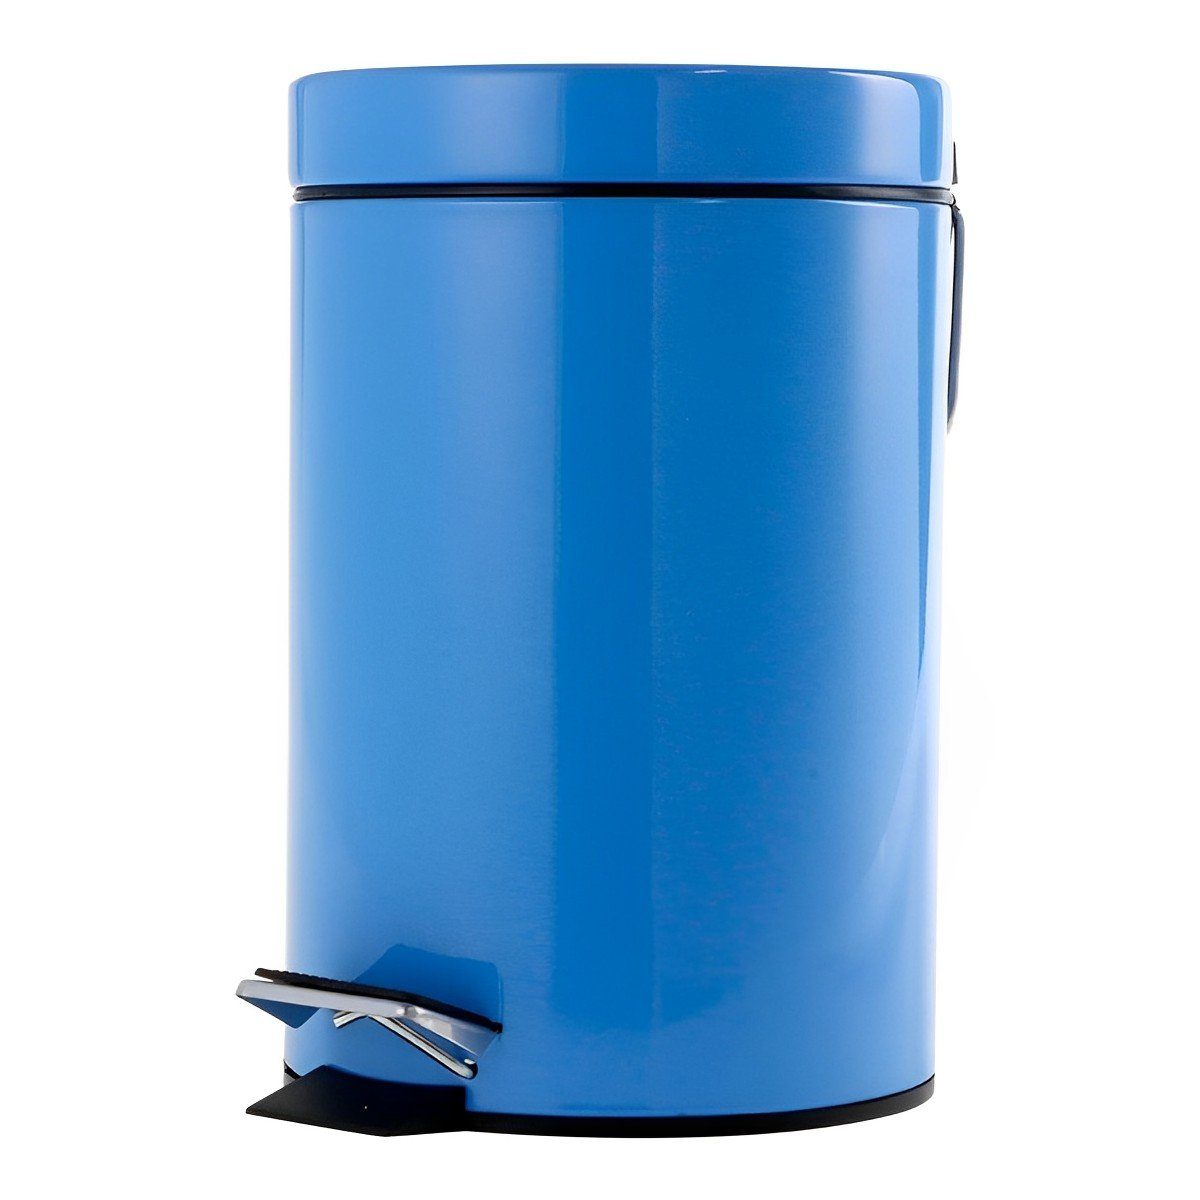 Schäfer Mülleimer Tretabfalleimer Büro Design 3 Liter Blau